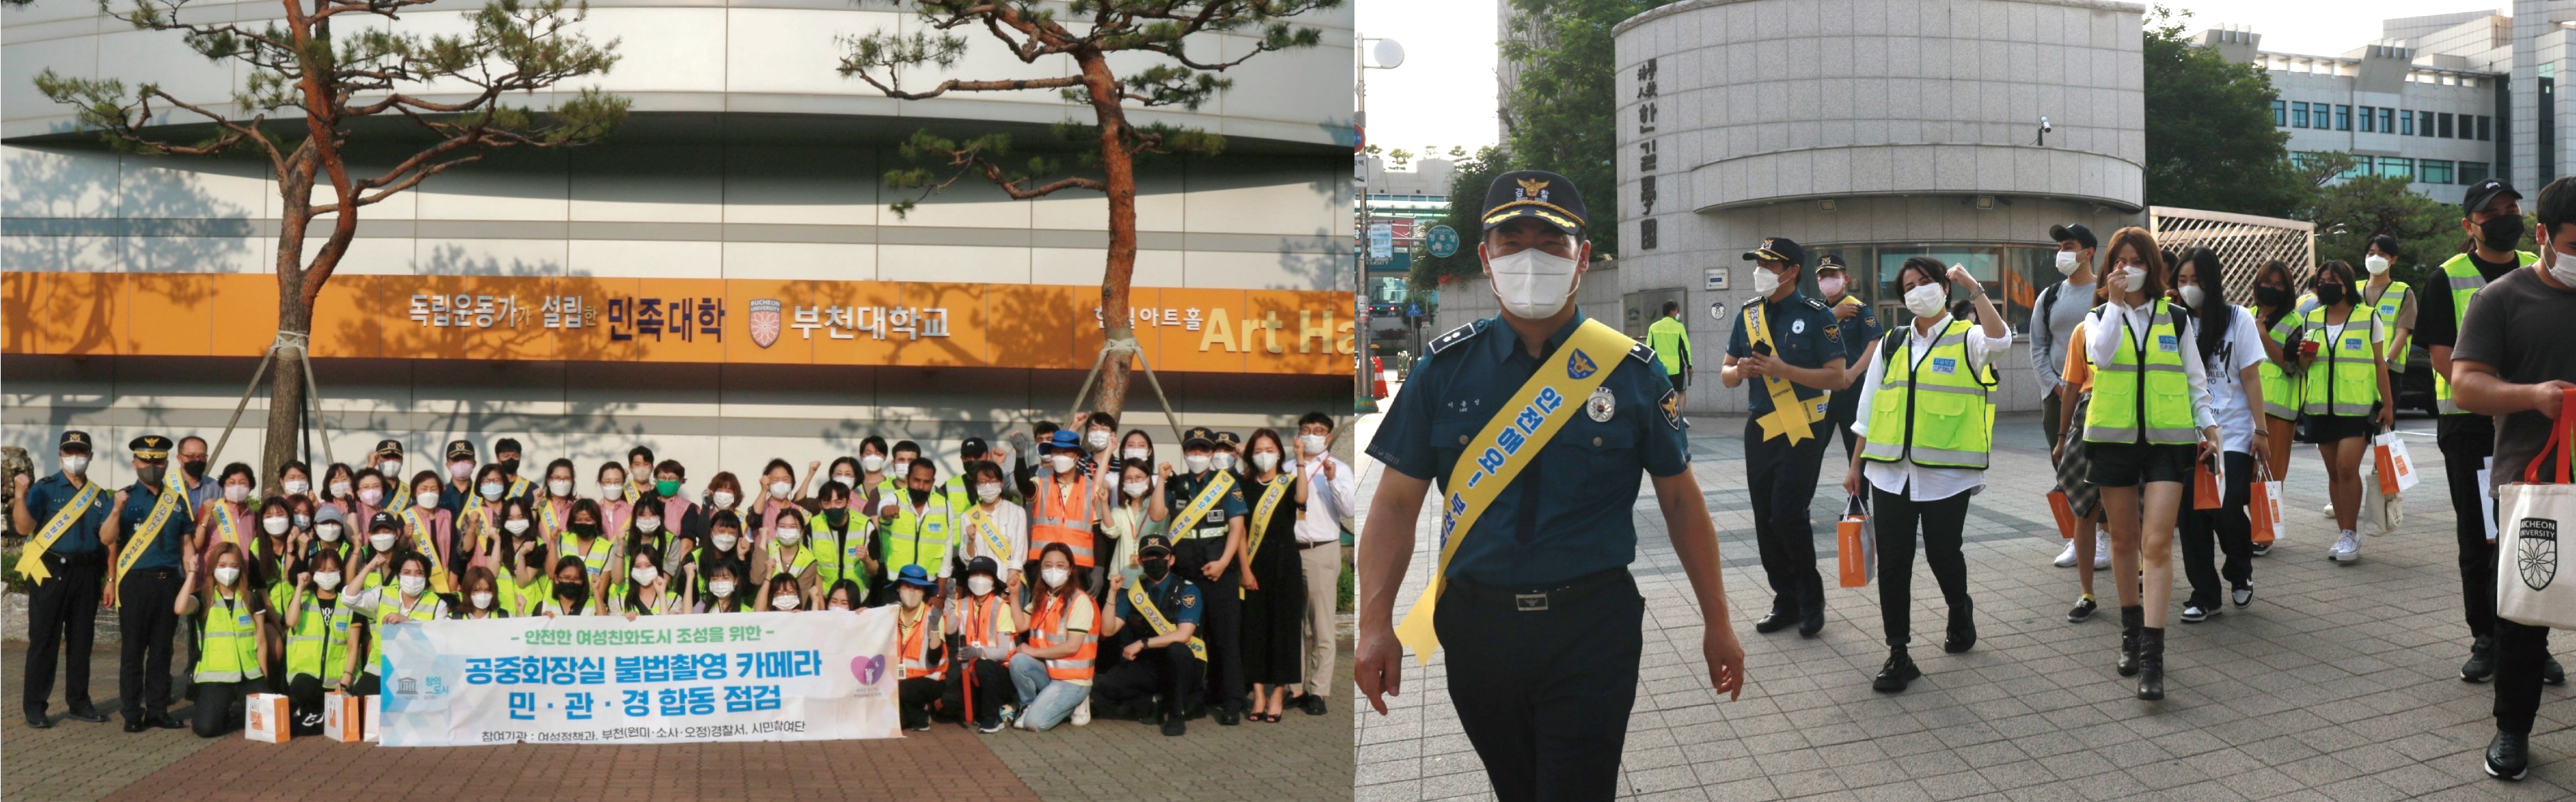 부천대학교, ‘외국인 유학생 자율방범대’ 활동 및 범죄예방 캠페인 실시